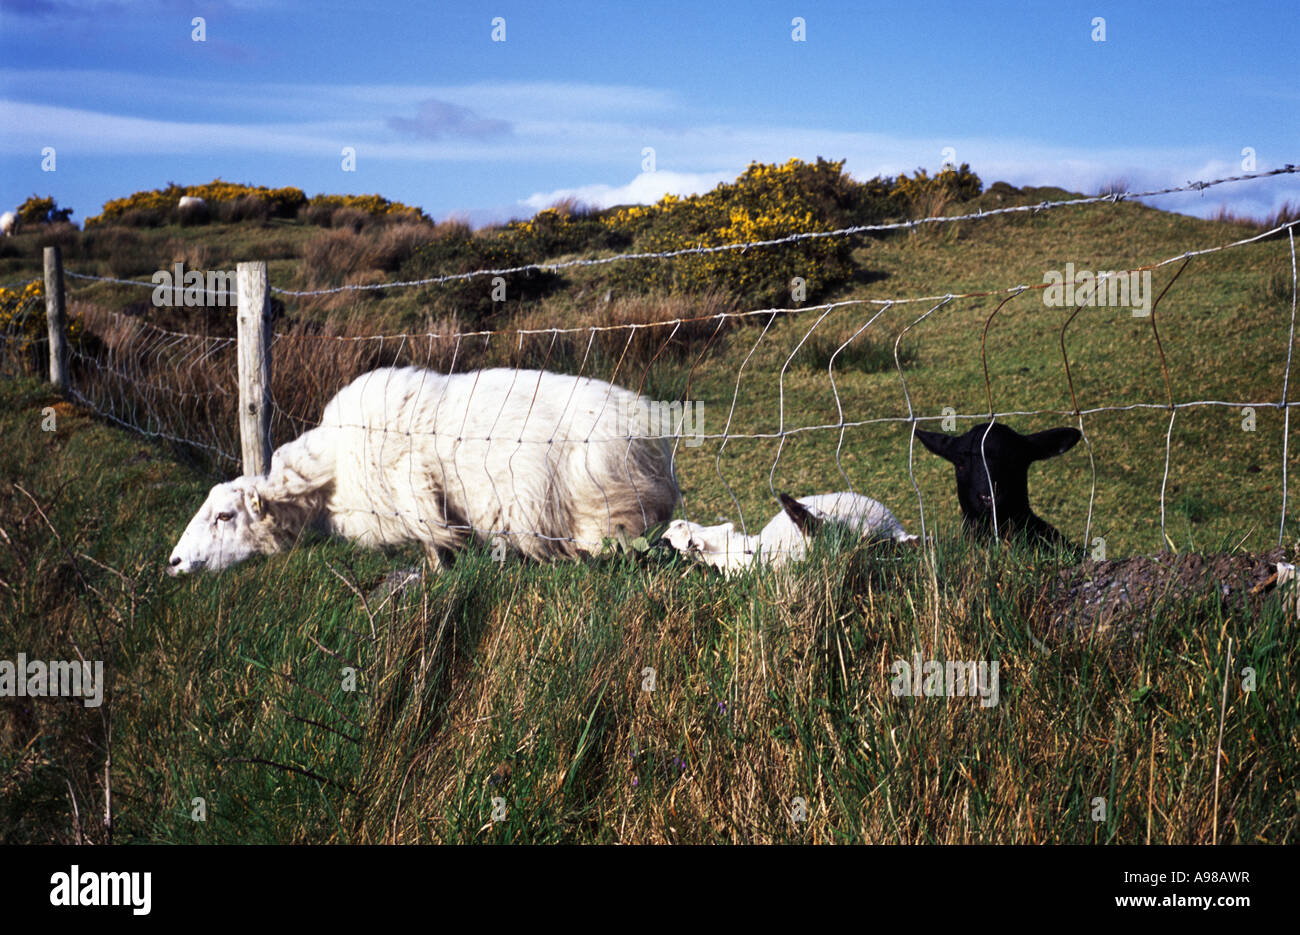 Un mouton blanc colle sa tête dans une clôture, surveillée par un mouton noir, Mont Gabriel, Glaun, près de West Cork Irlande schull Banque D'Images